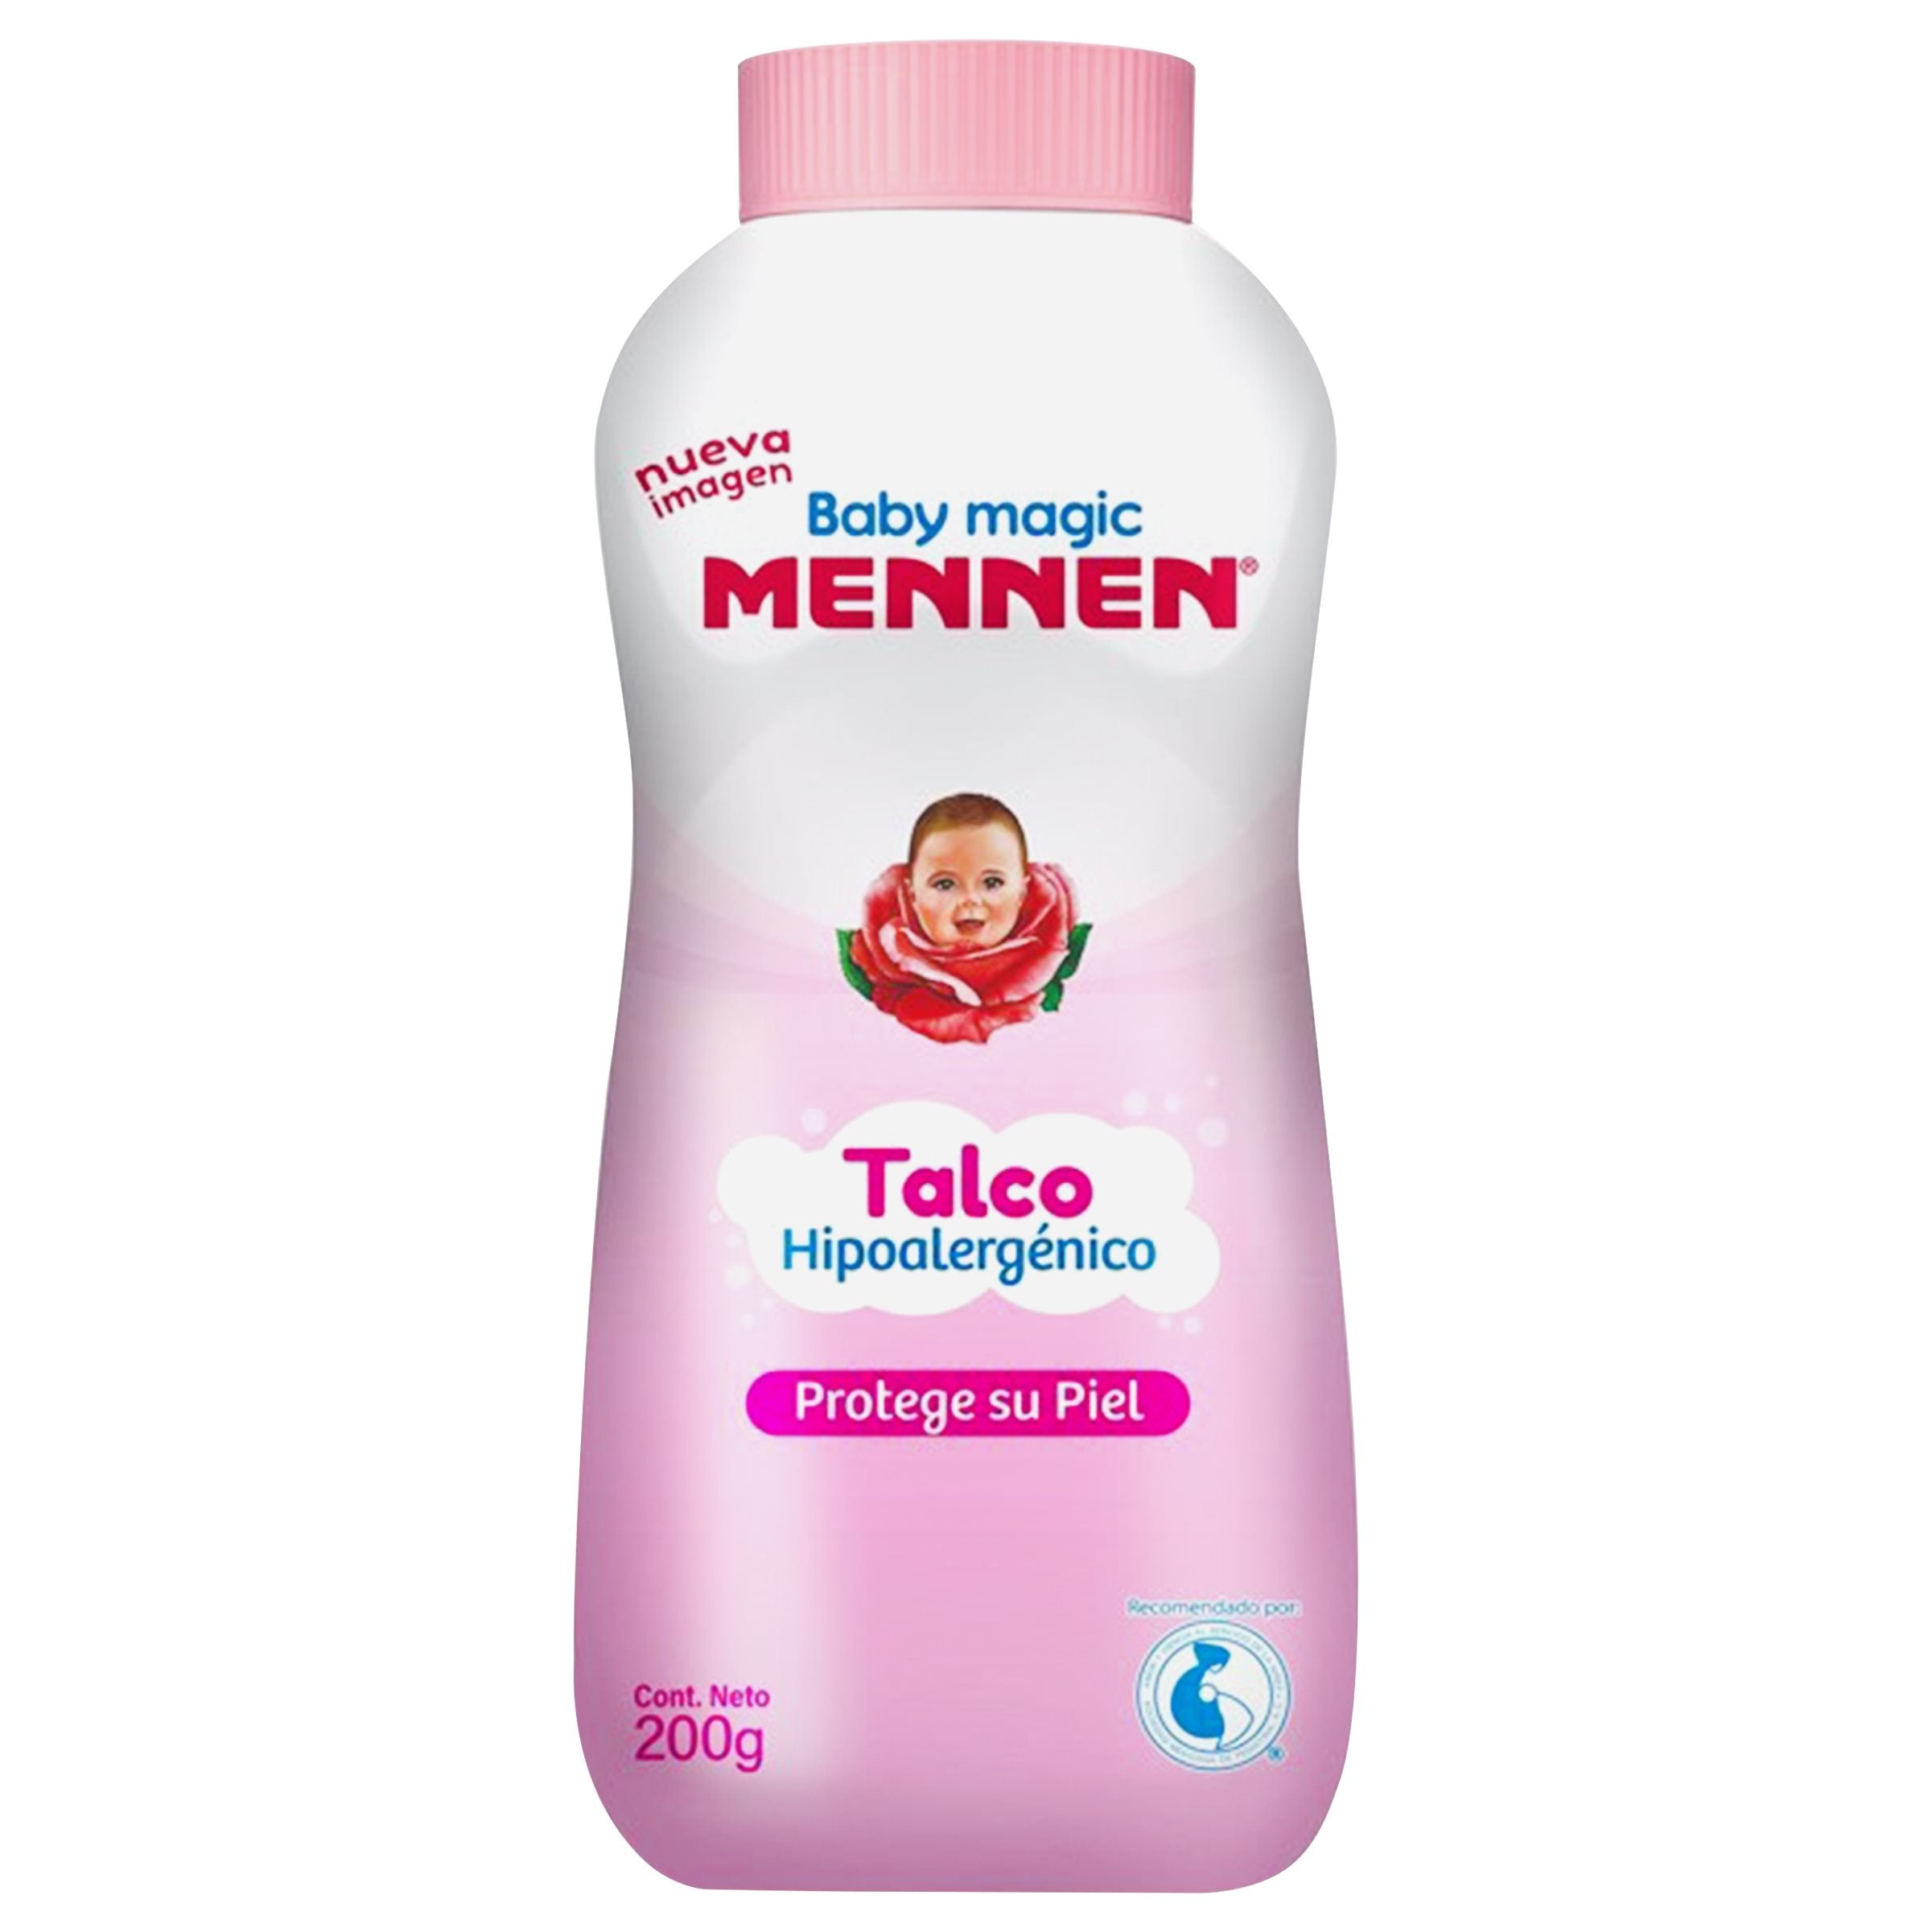 Aceite para bebé Mennen baby magic hipoalergénico 400 ml